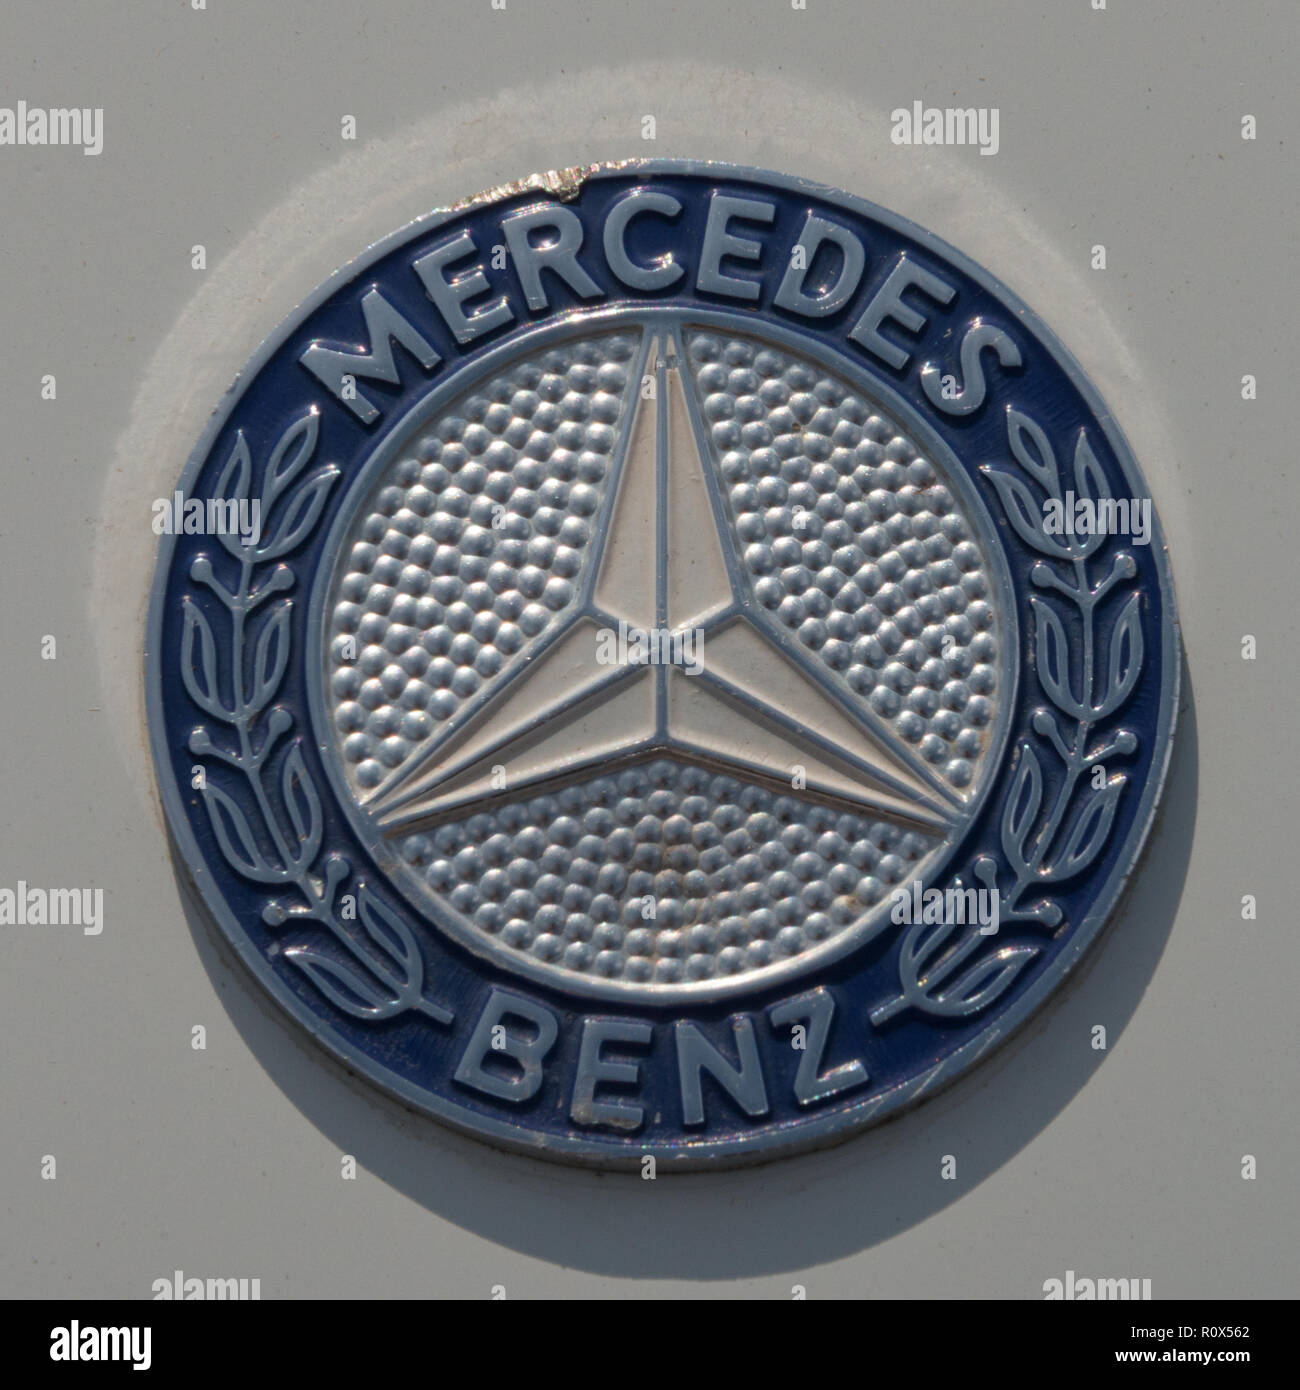 Mecedes Benz Car Marque Stock Photo